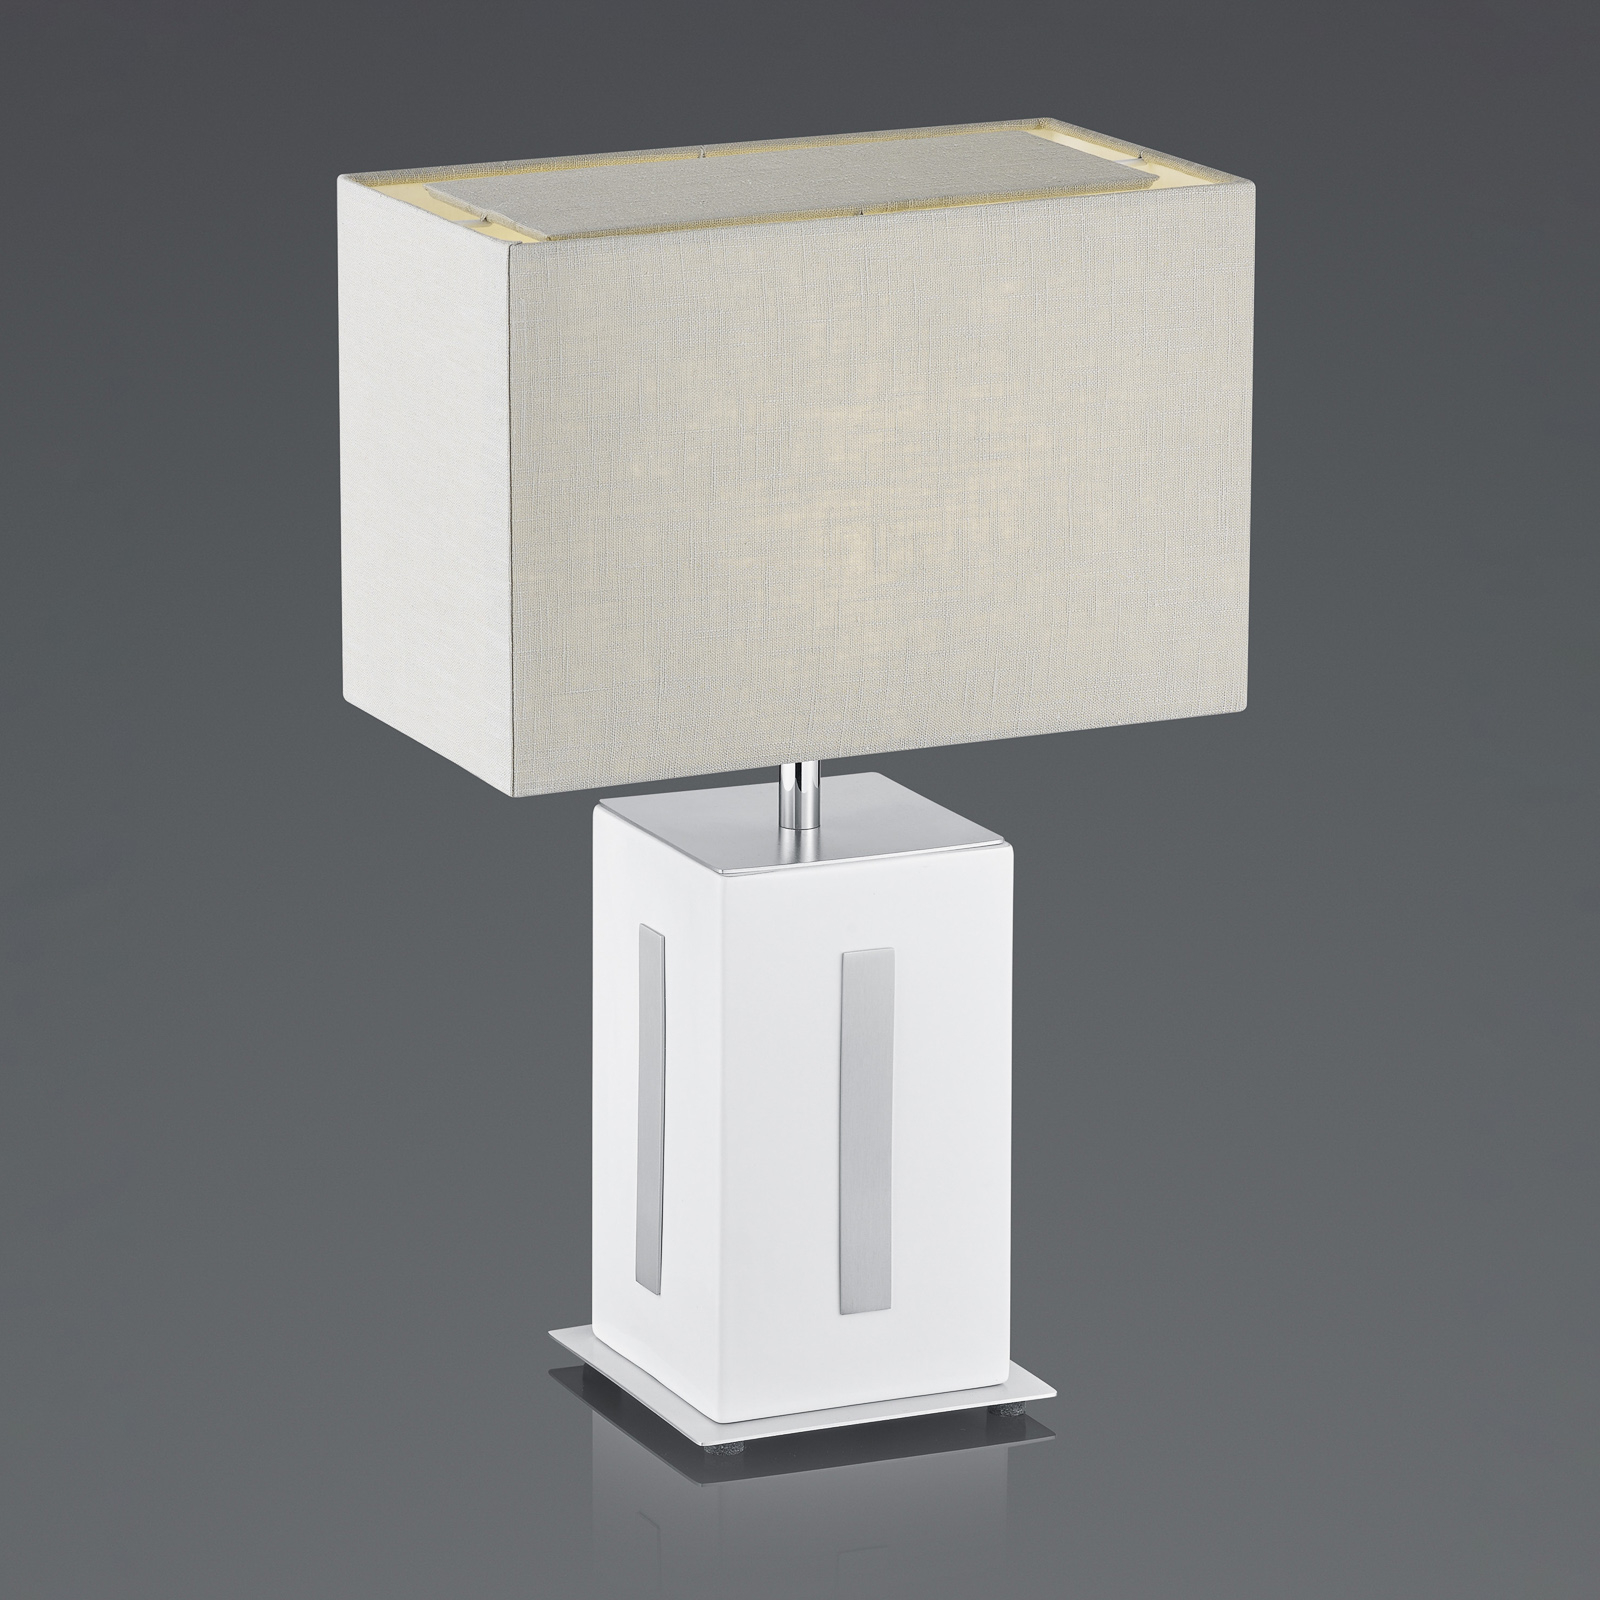 BANKAMP Karlo bordslampa vit/grå, höjd 47 cm